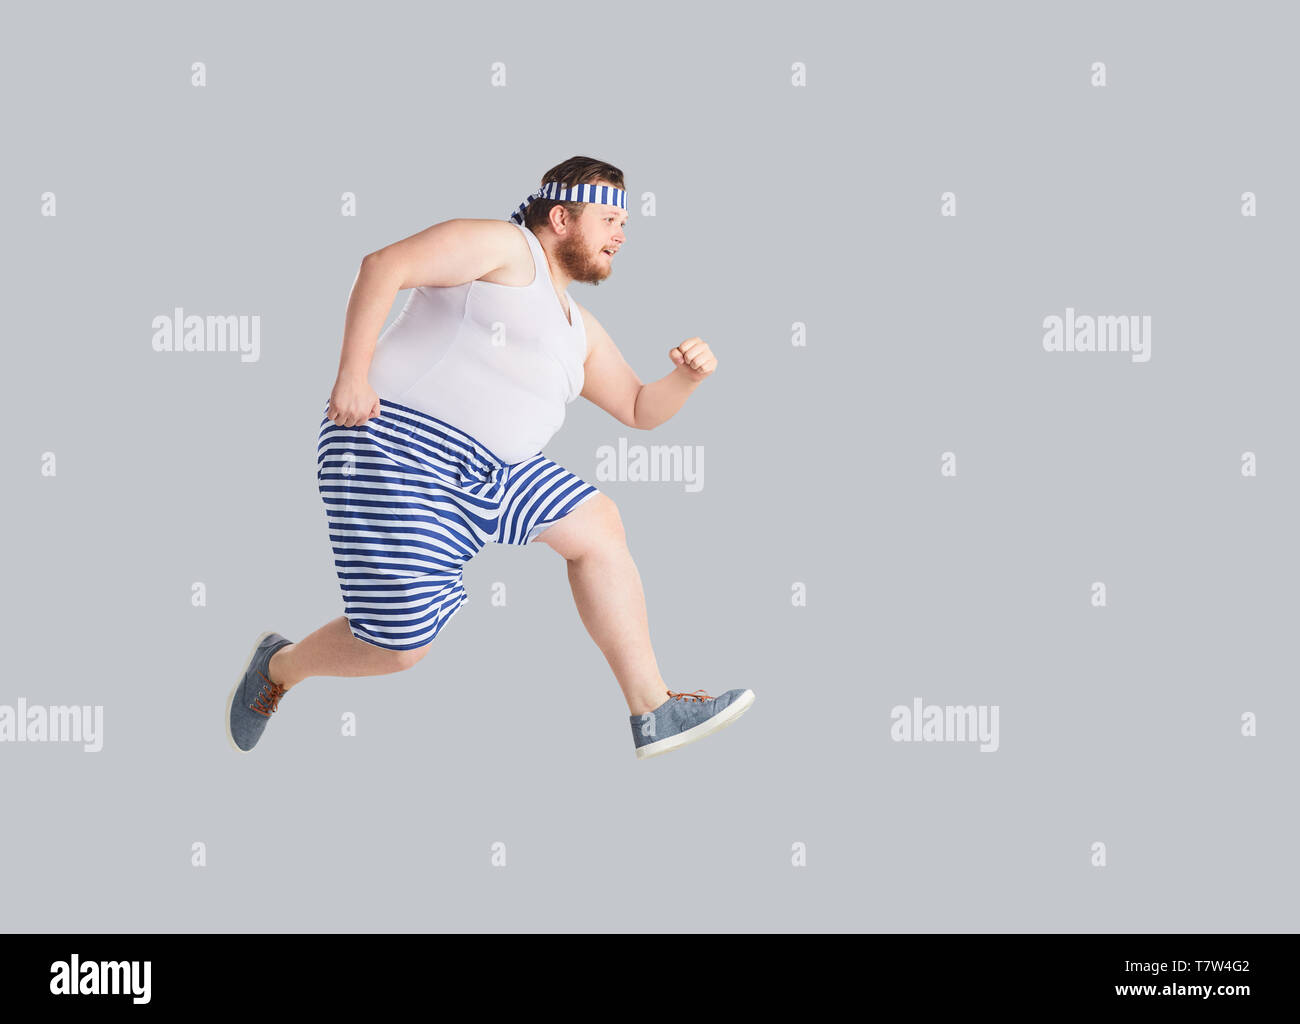 Funny Man in pantaloncini a strisce viene eseguito su uno sfondo grigio. Foto Stock